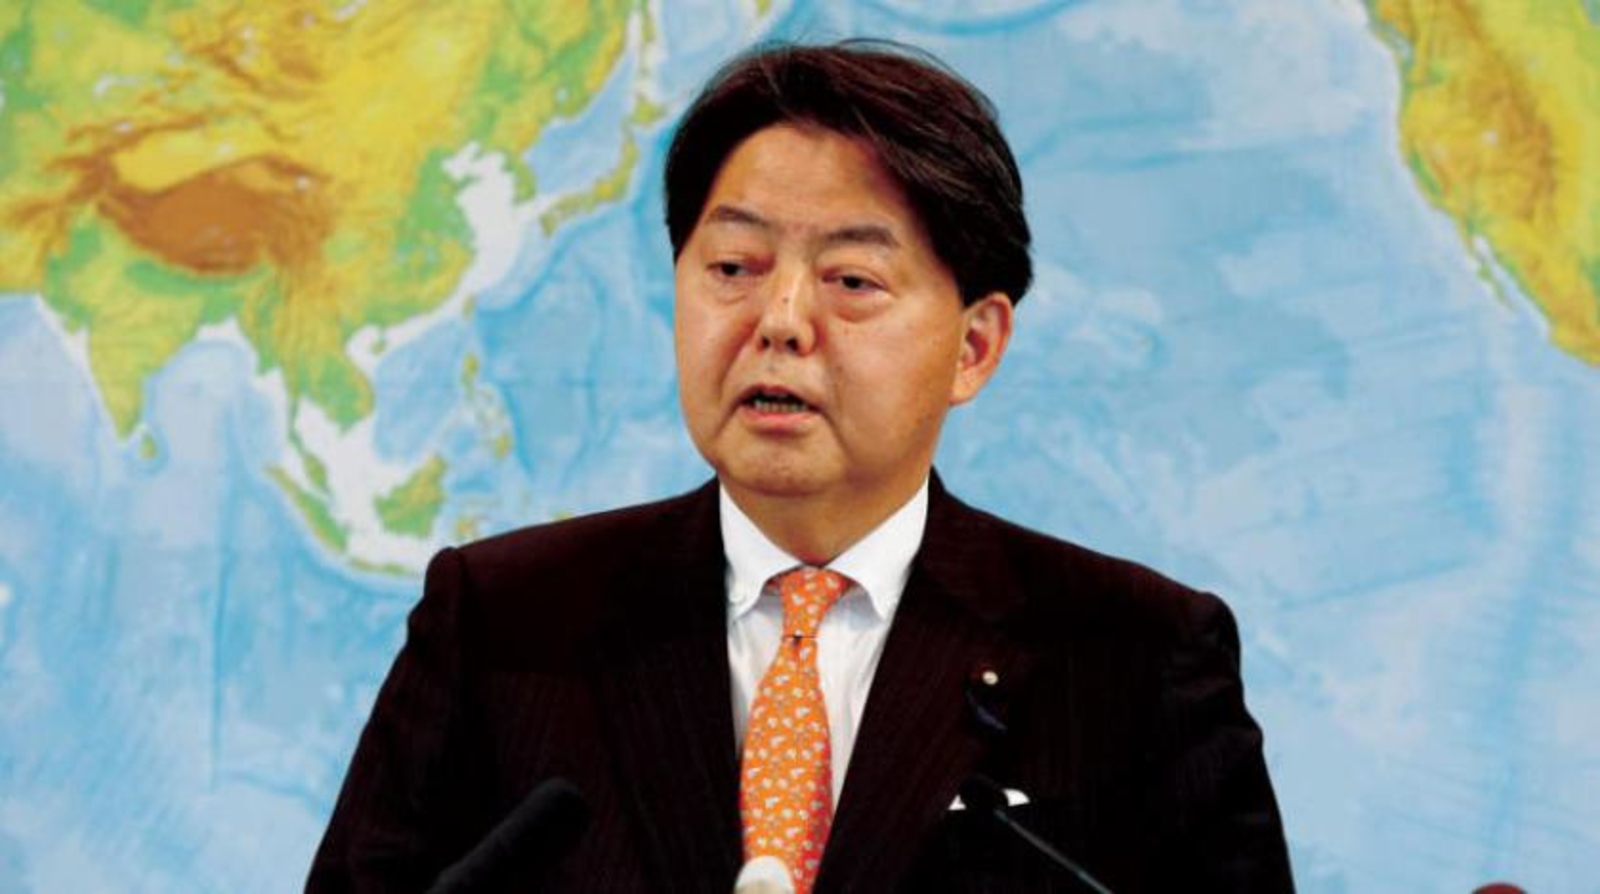 وزير خارجية اليابان تخلف عن حضور افتتاحية مجموعة الـ20 بإندونيسيا بعد إصابة  رئيس وزراء بلاده السابق